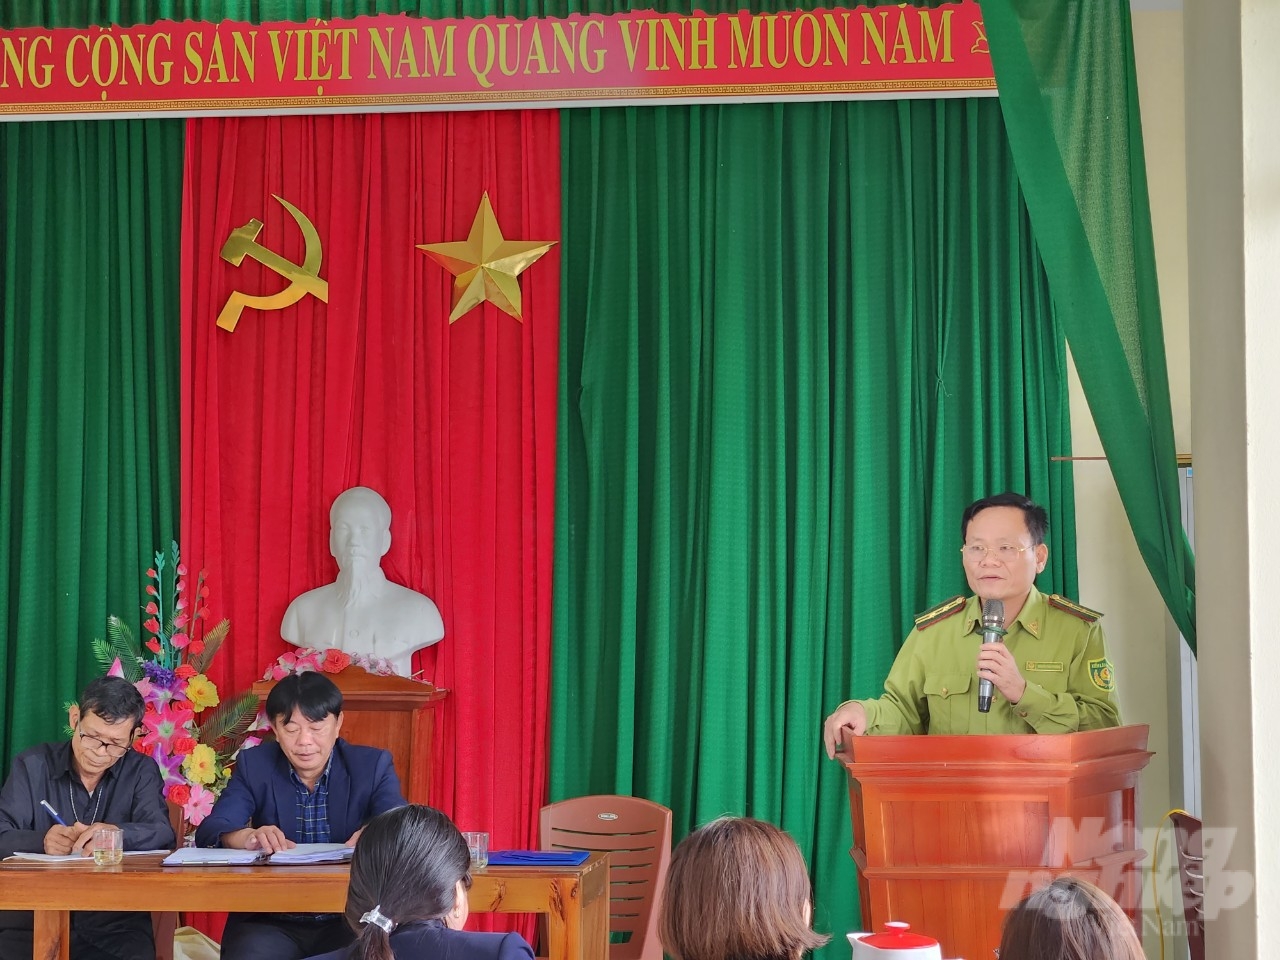 Ông Nguyễn Trần Phương, Hạt trưởng Hạt kiểm lâm thị xã Nghi Sơn trả lời các câu hỏi của người dân tại buổi đối thoại. Ảnh: Quốc Toản.